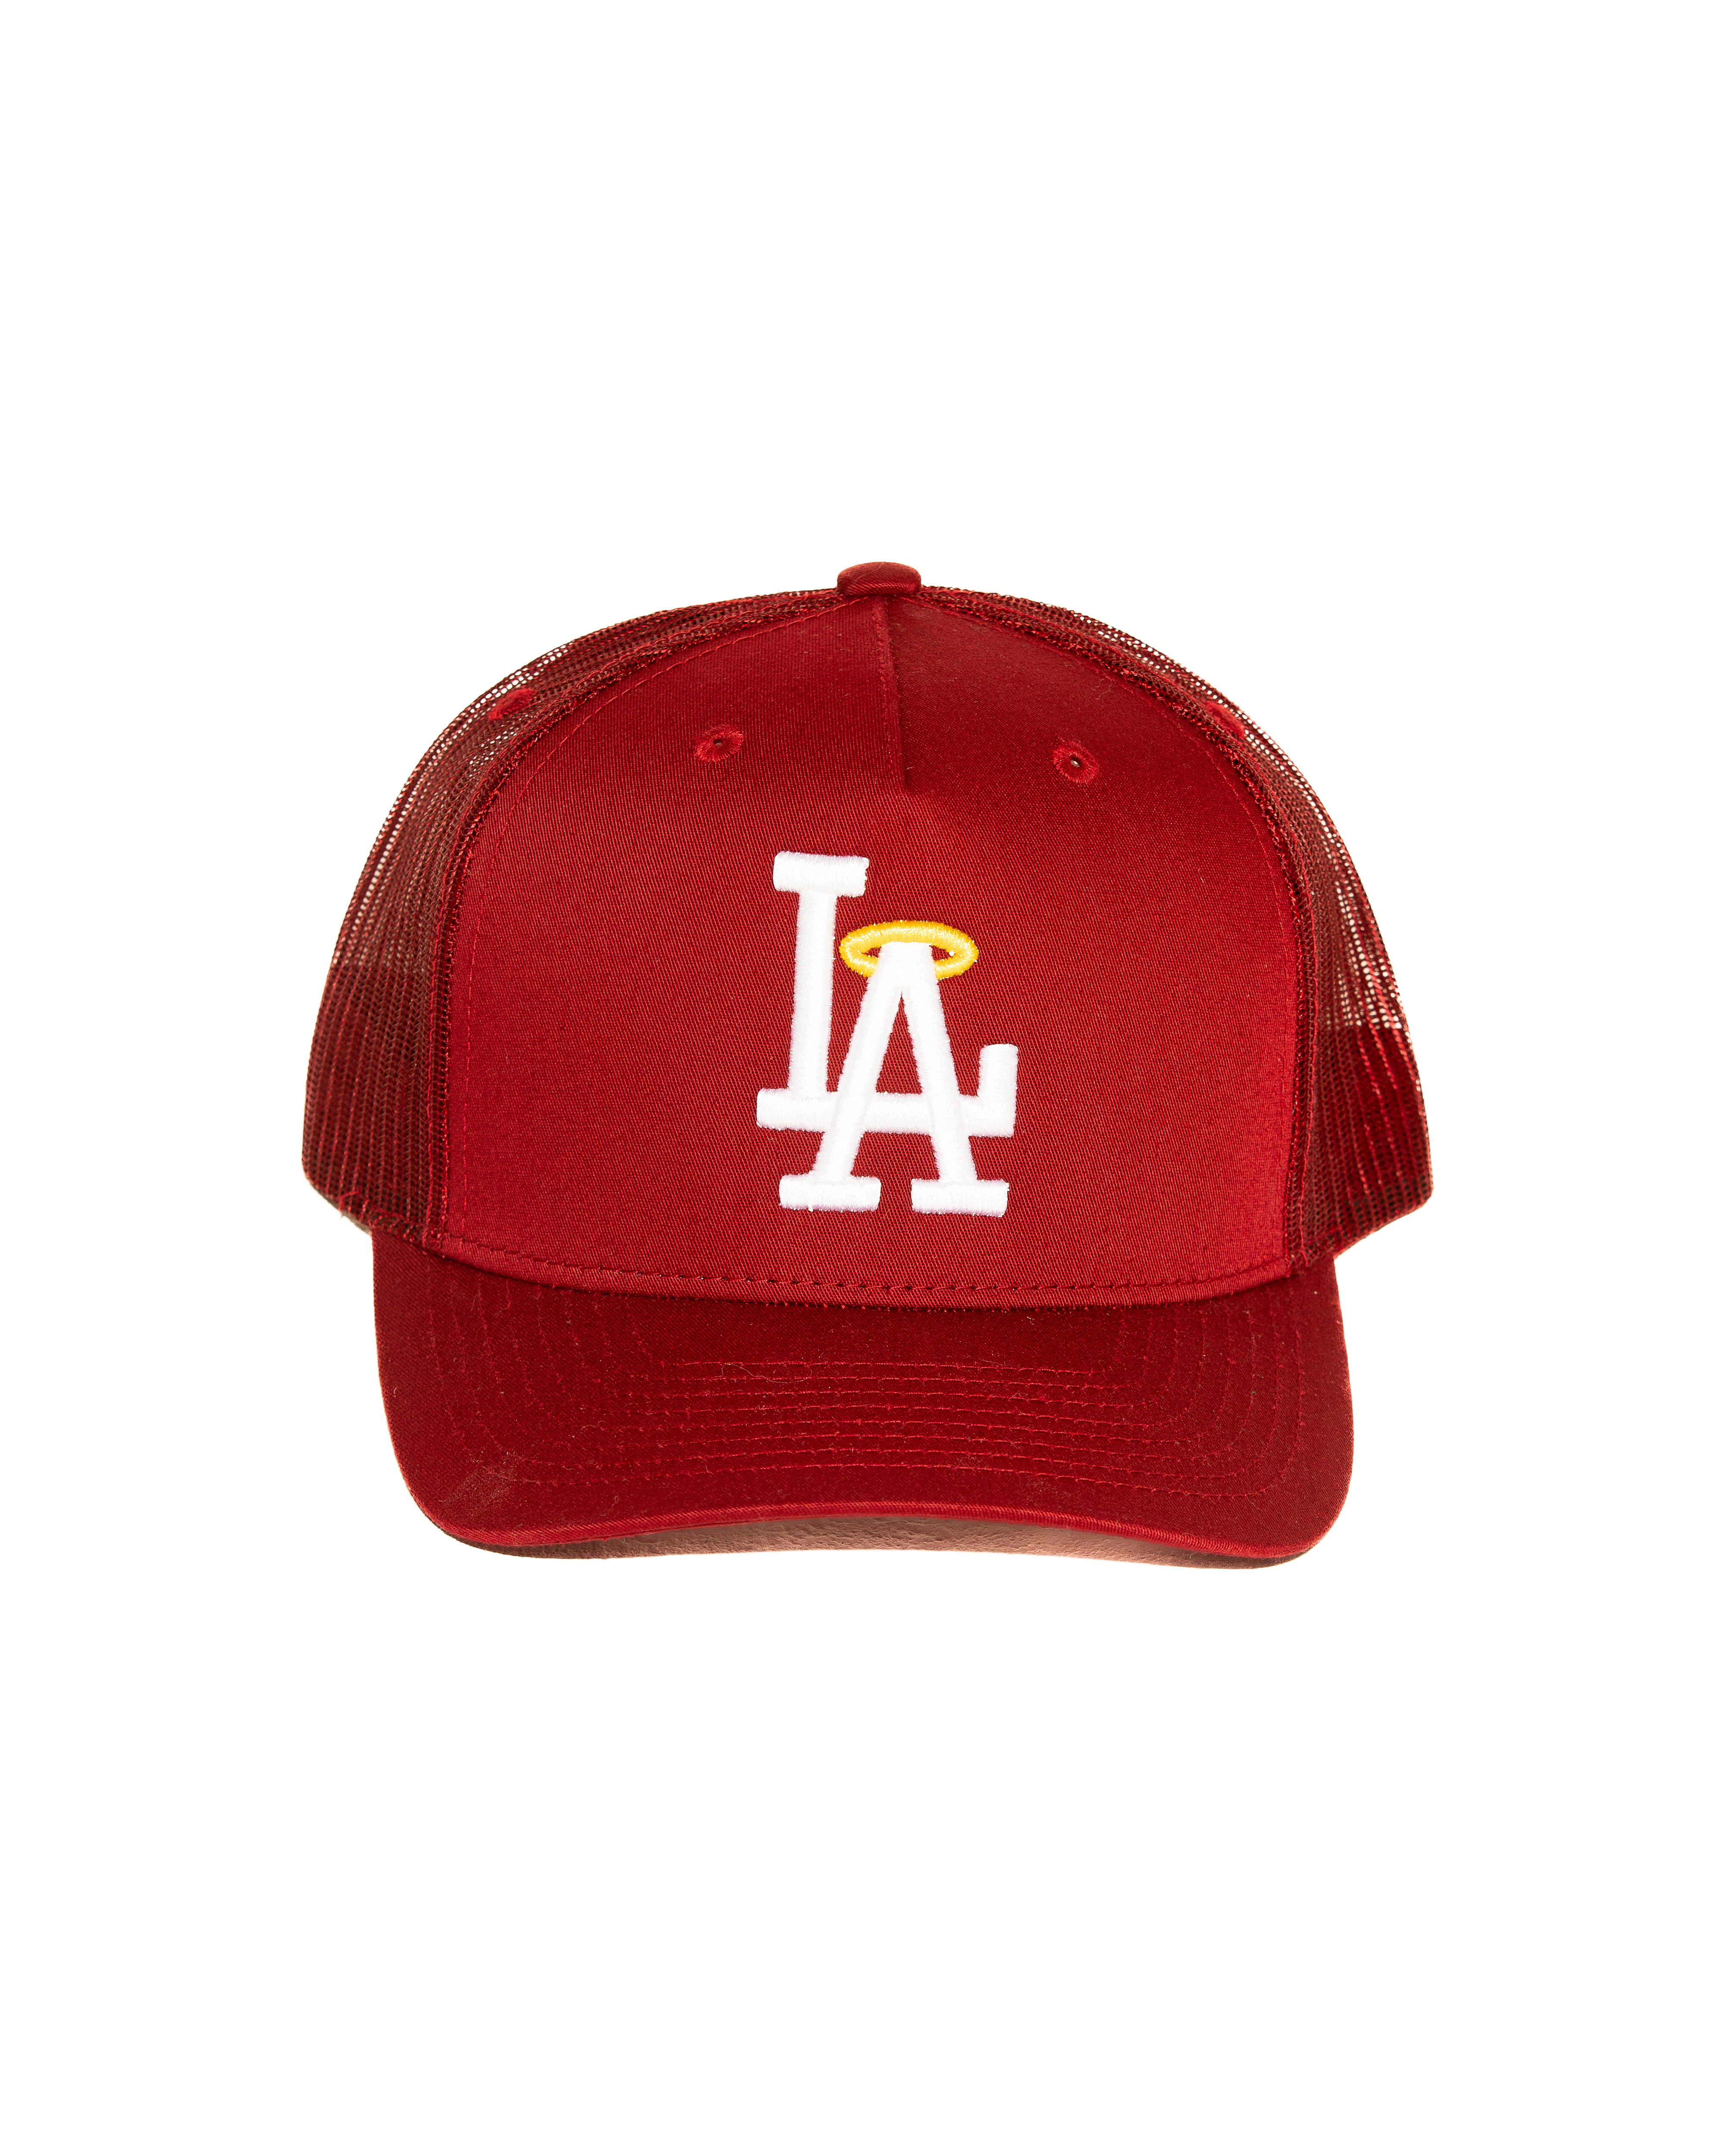 Springe Ni I LA Saints Trucker Hat (Red) – Des Santos